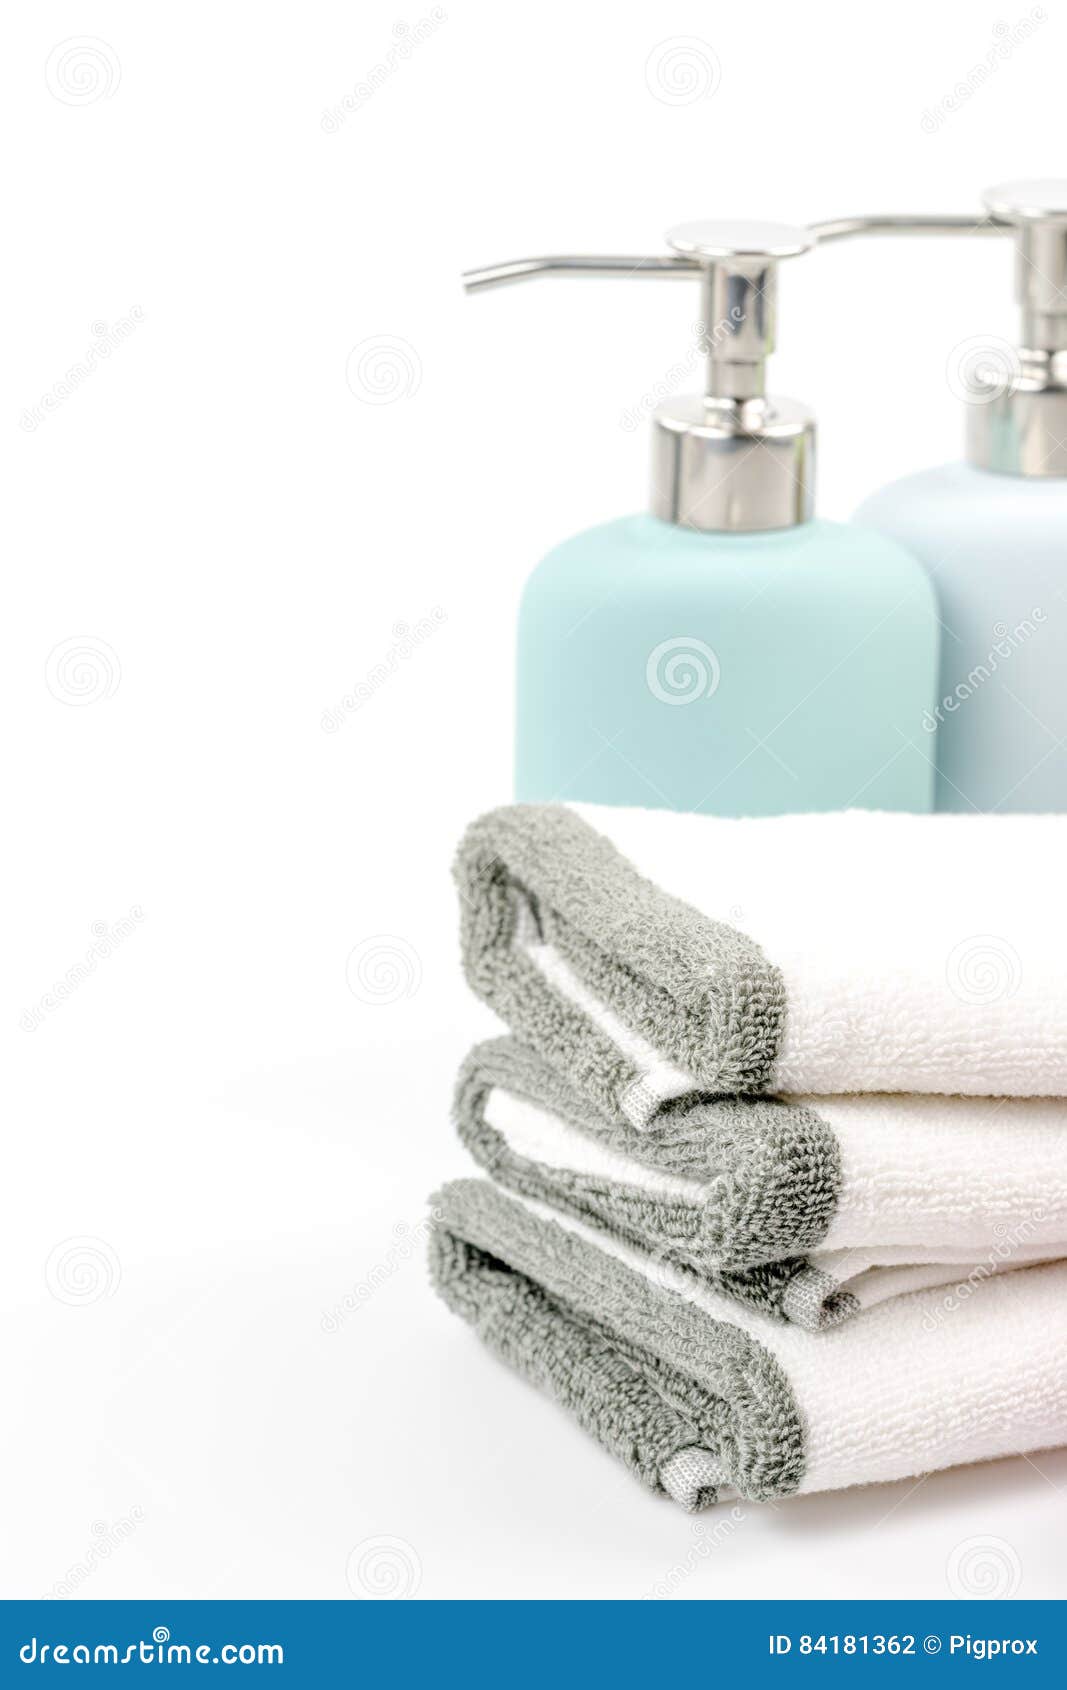 Шампунь полотенце. Шампунь и полотенце. Мокап с полотенцем для шампуня. Как красиво сфотографировать шампунь.